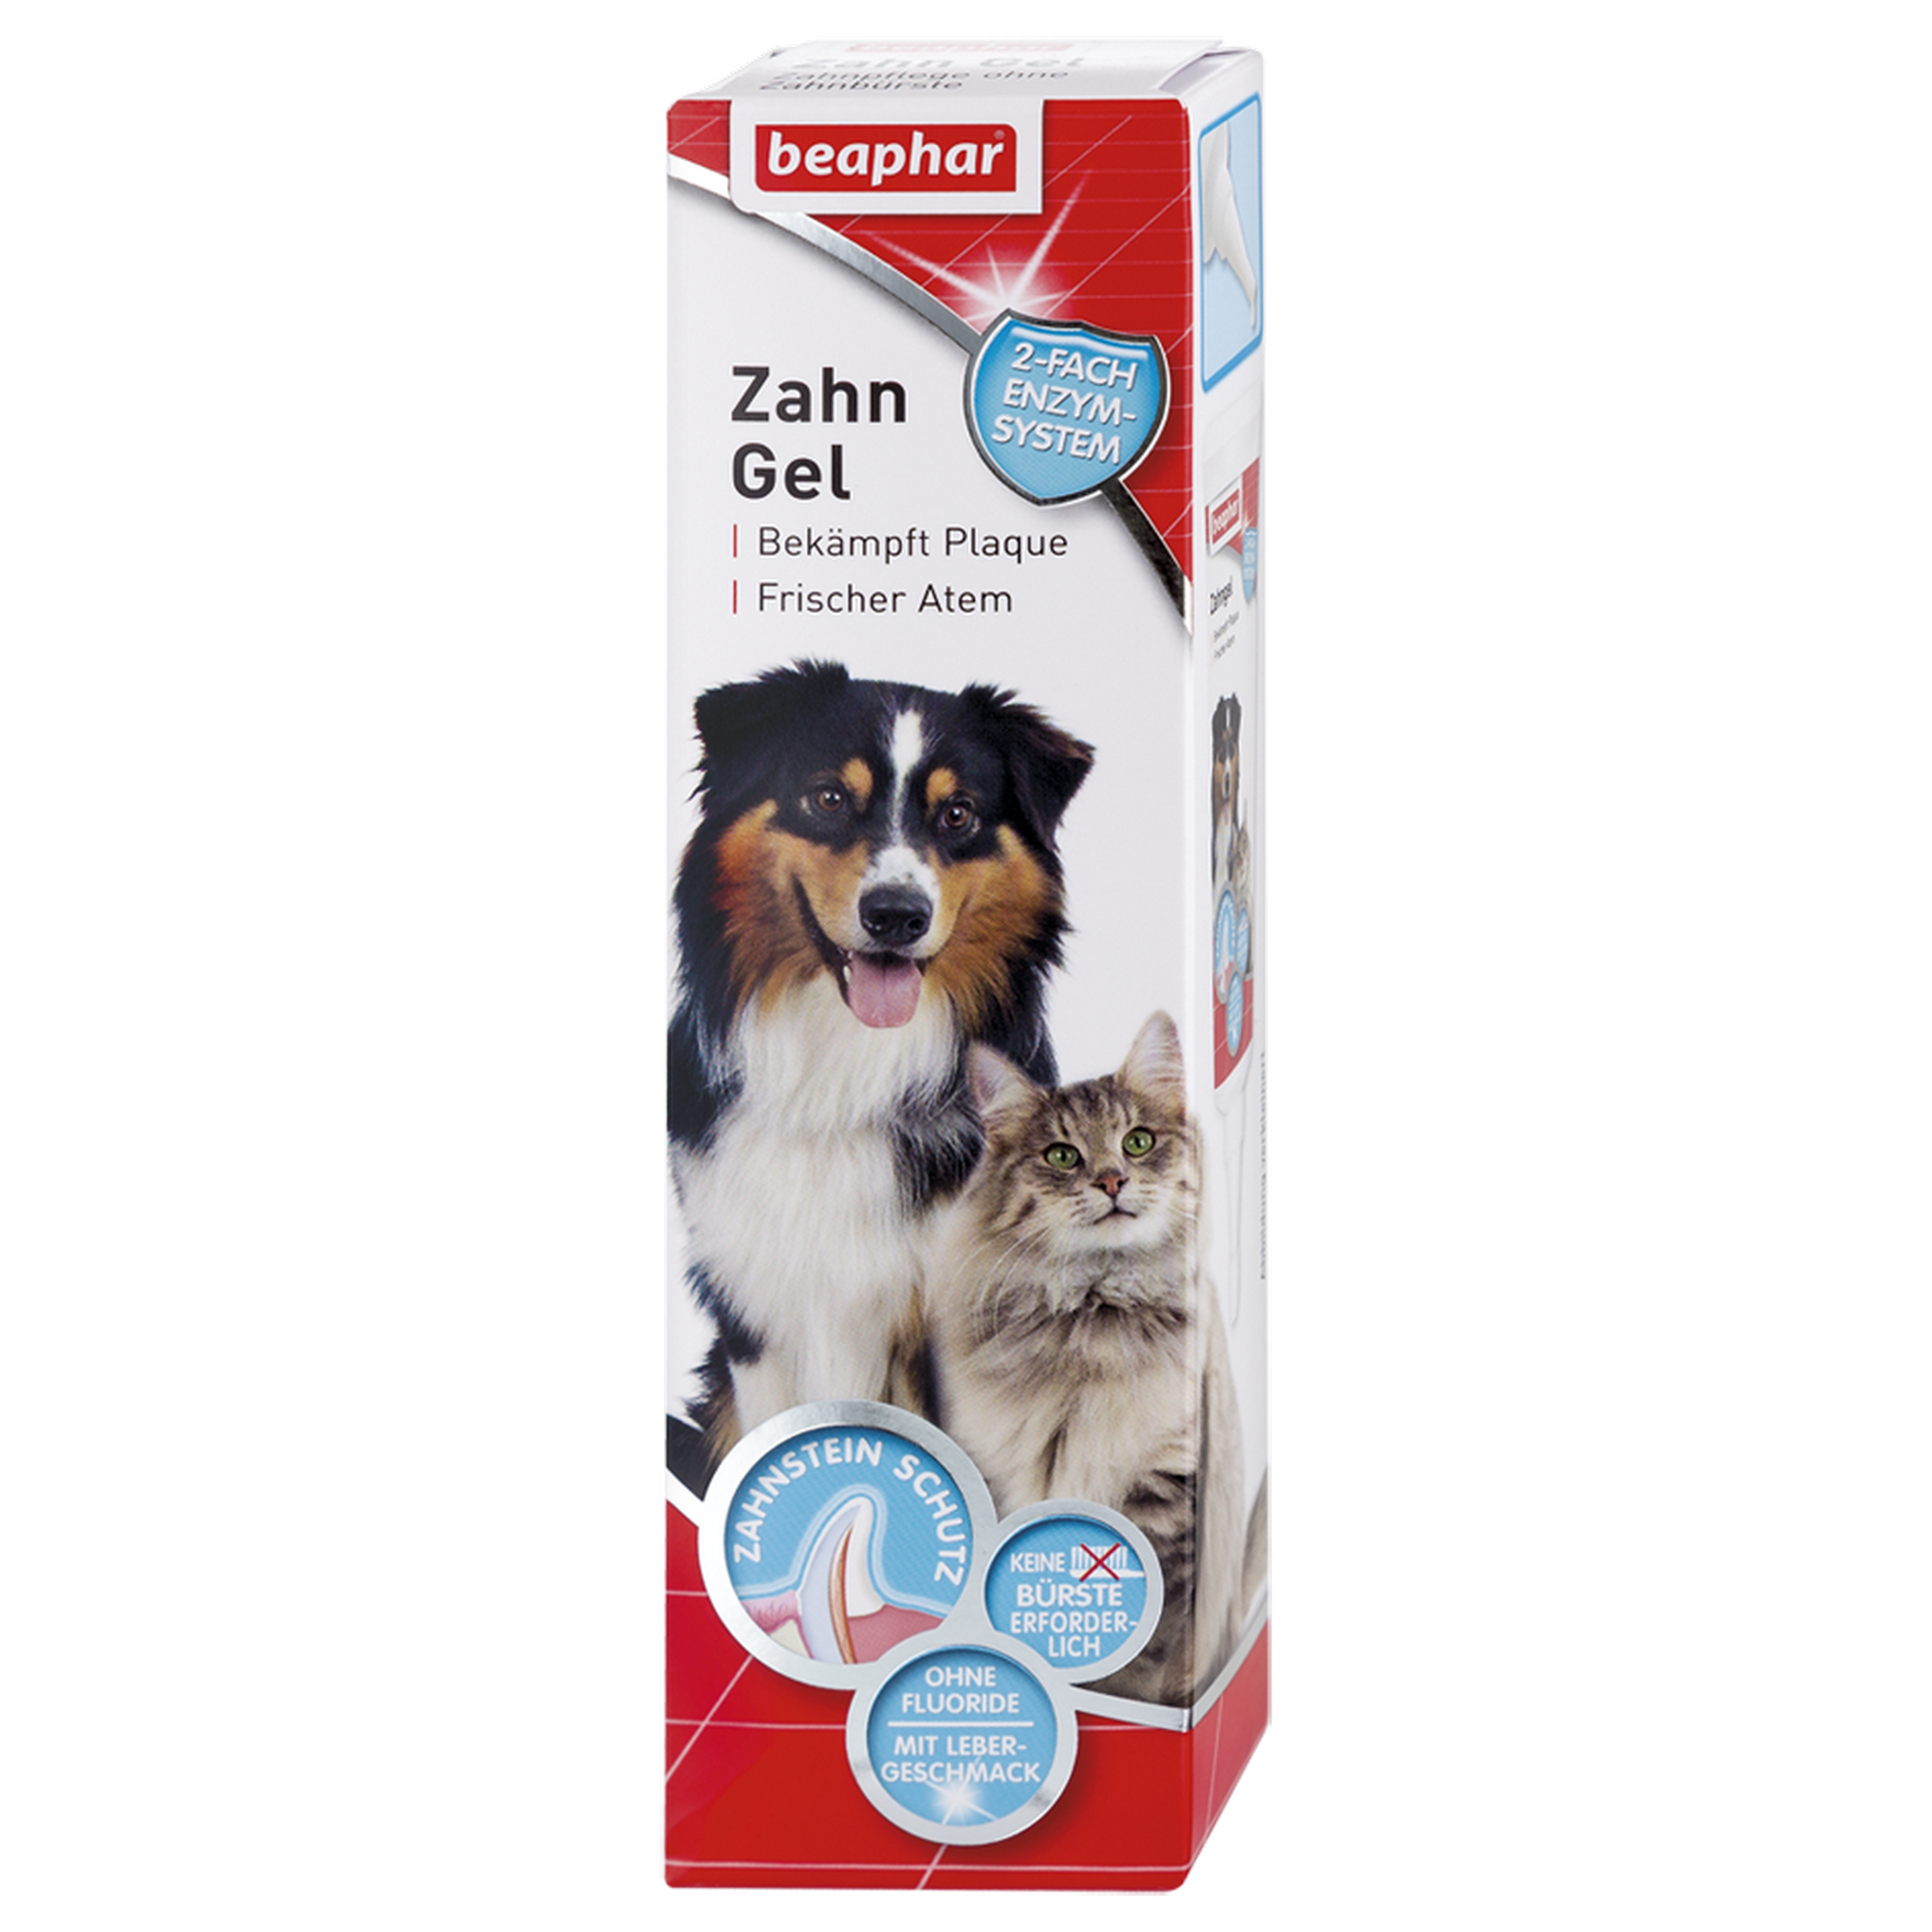 Zahngel für Hunde und Katzen 100 g + product picture